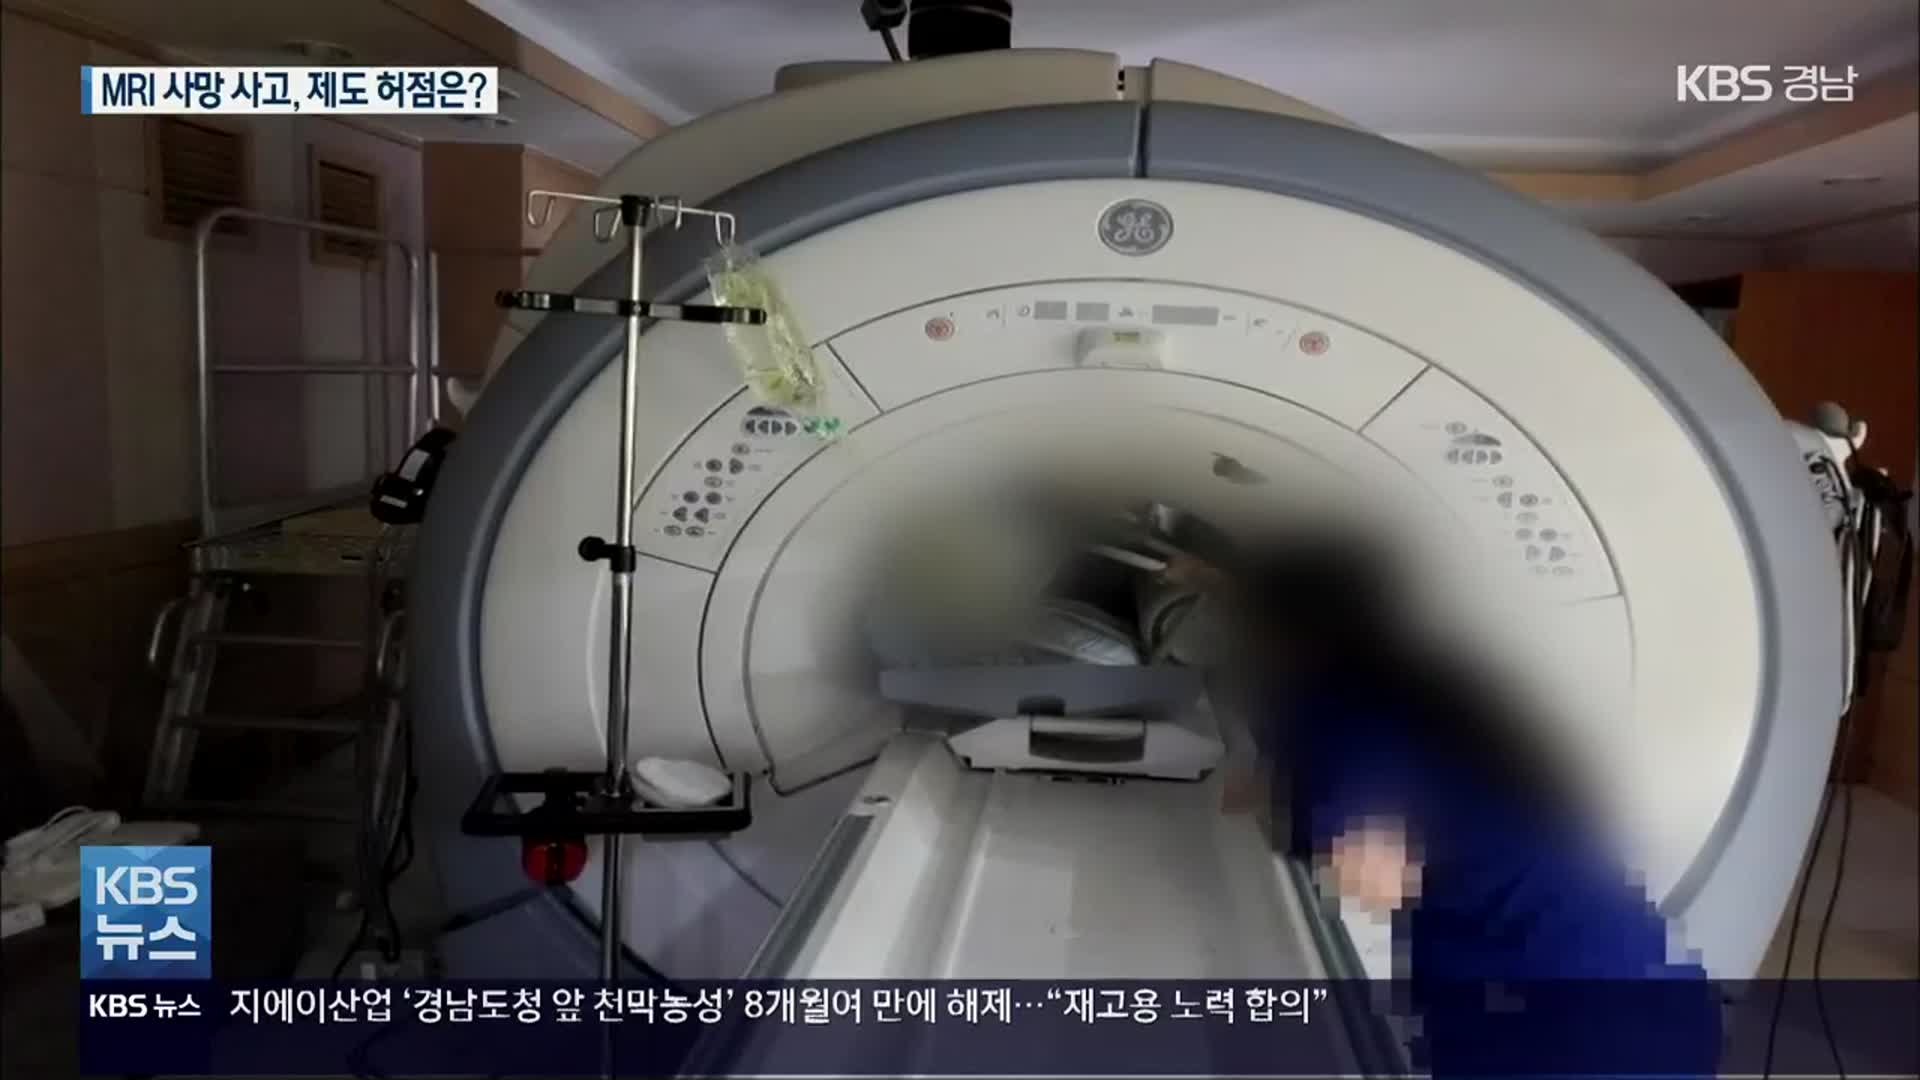 김해 MRI 사망 사고 제도적 허점 없나?